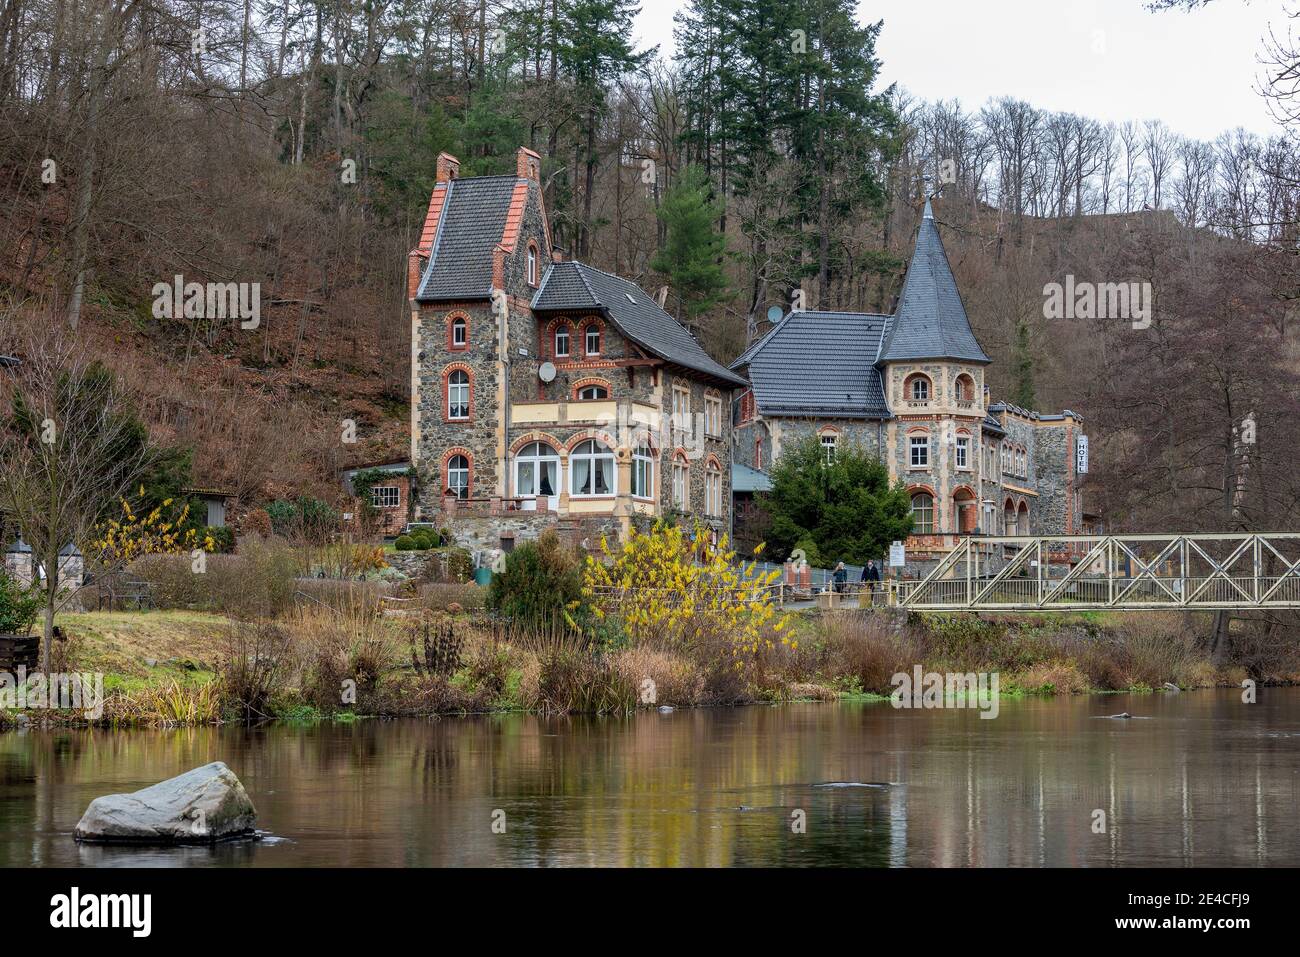 Allemagne, Saxe-Anhalt, Treseburg, villas mystiques dans le Bodetal, construit autour de 1890 de pierres historiques de Treseburg, style architectural français, aujourd'hui utilisé comme un hôtel et maison d'hôtes Banque D'Images